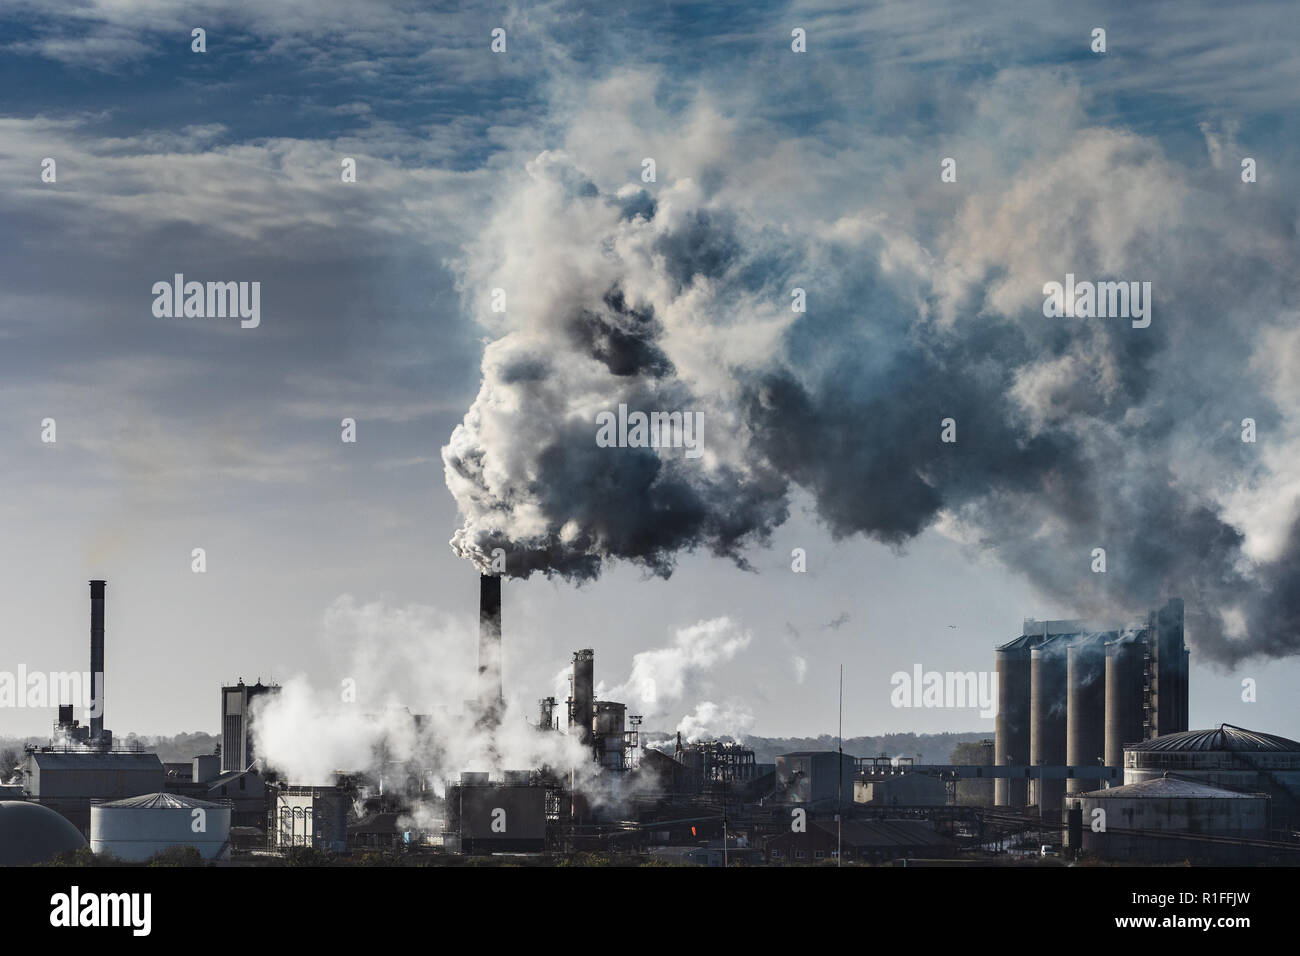 Luftverschmutzung Verschmutzung der britischen Fabrik - Schornsteine der Zuckerrübenfabrik - hinterleuchteter Rauch und Dampf stammen aus der britischen Zuckerfabrik Bury St Edmunds UK Stockfoto